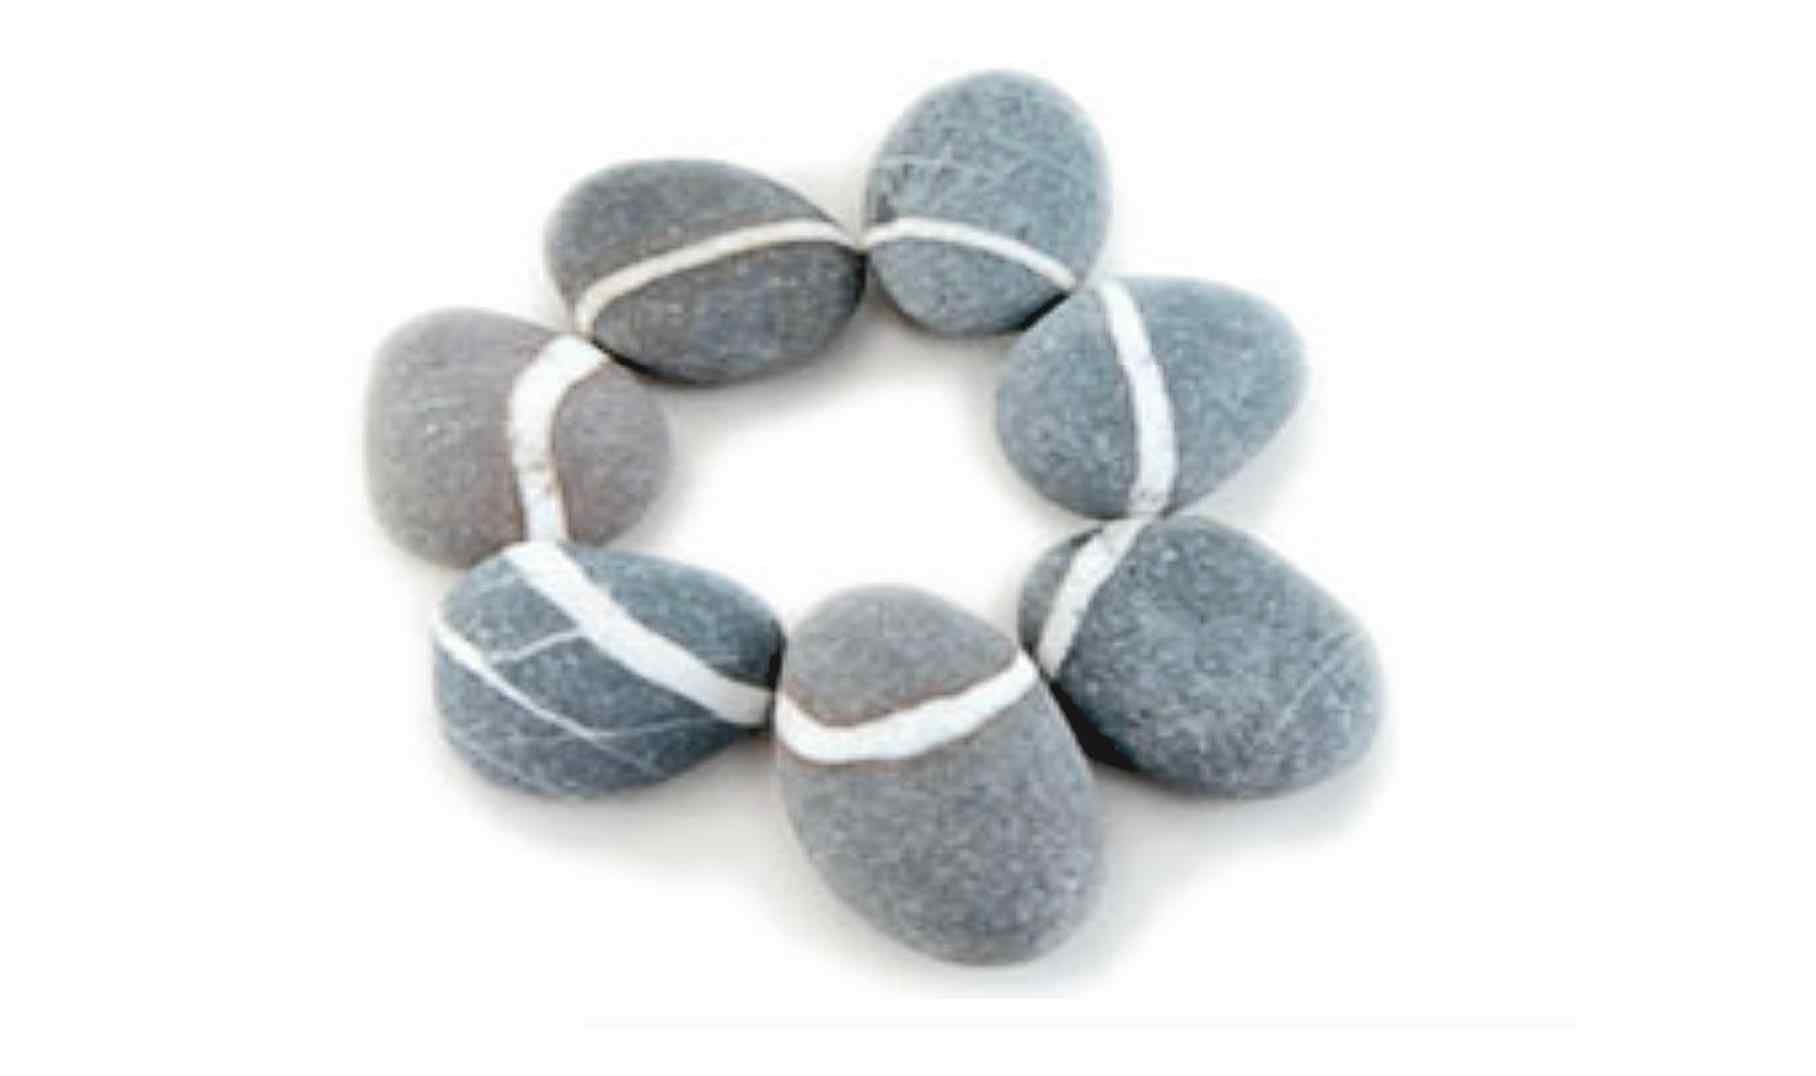 Steinkreis aus grauen Steinen mit jeweils weißen Strichen, die die Steine verbinden